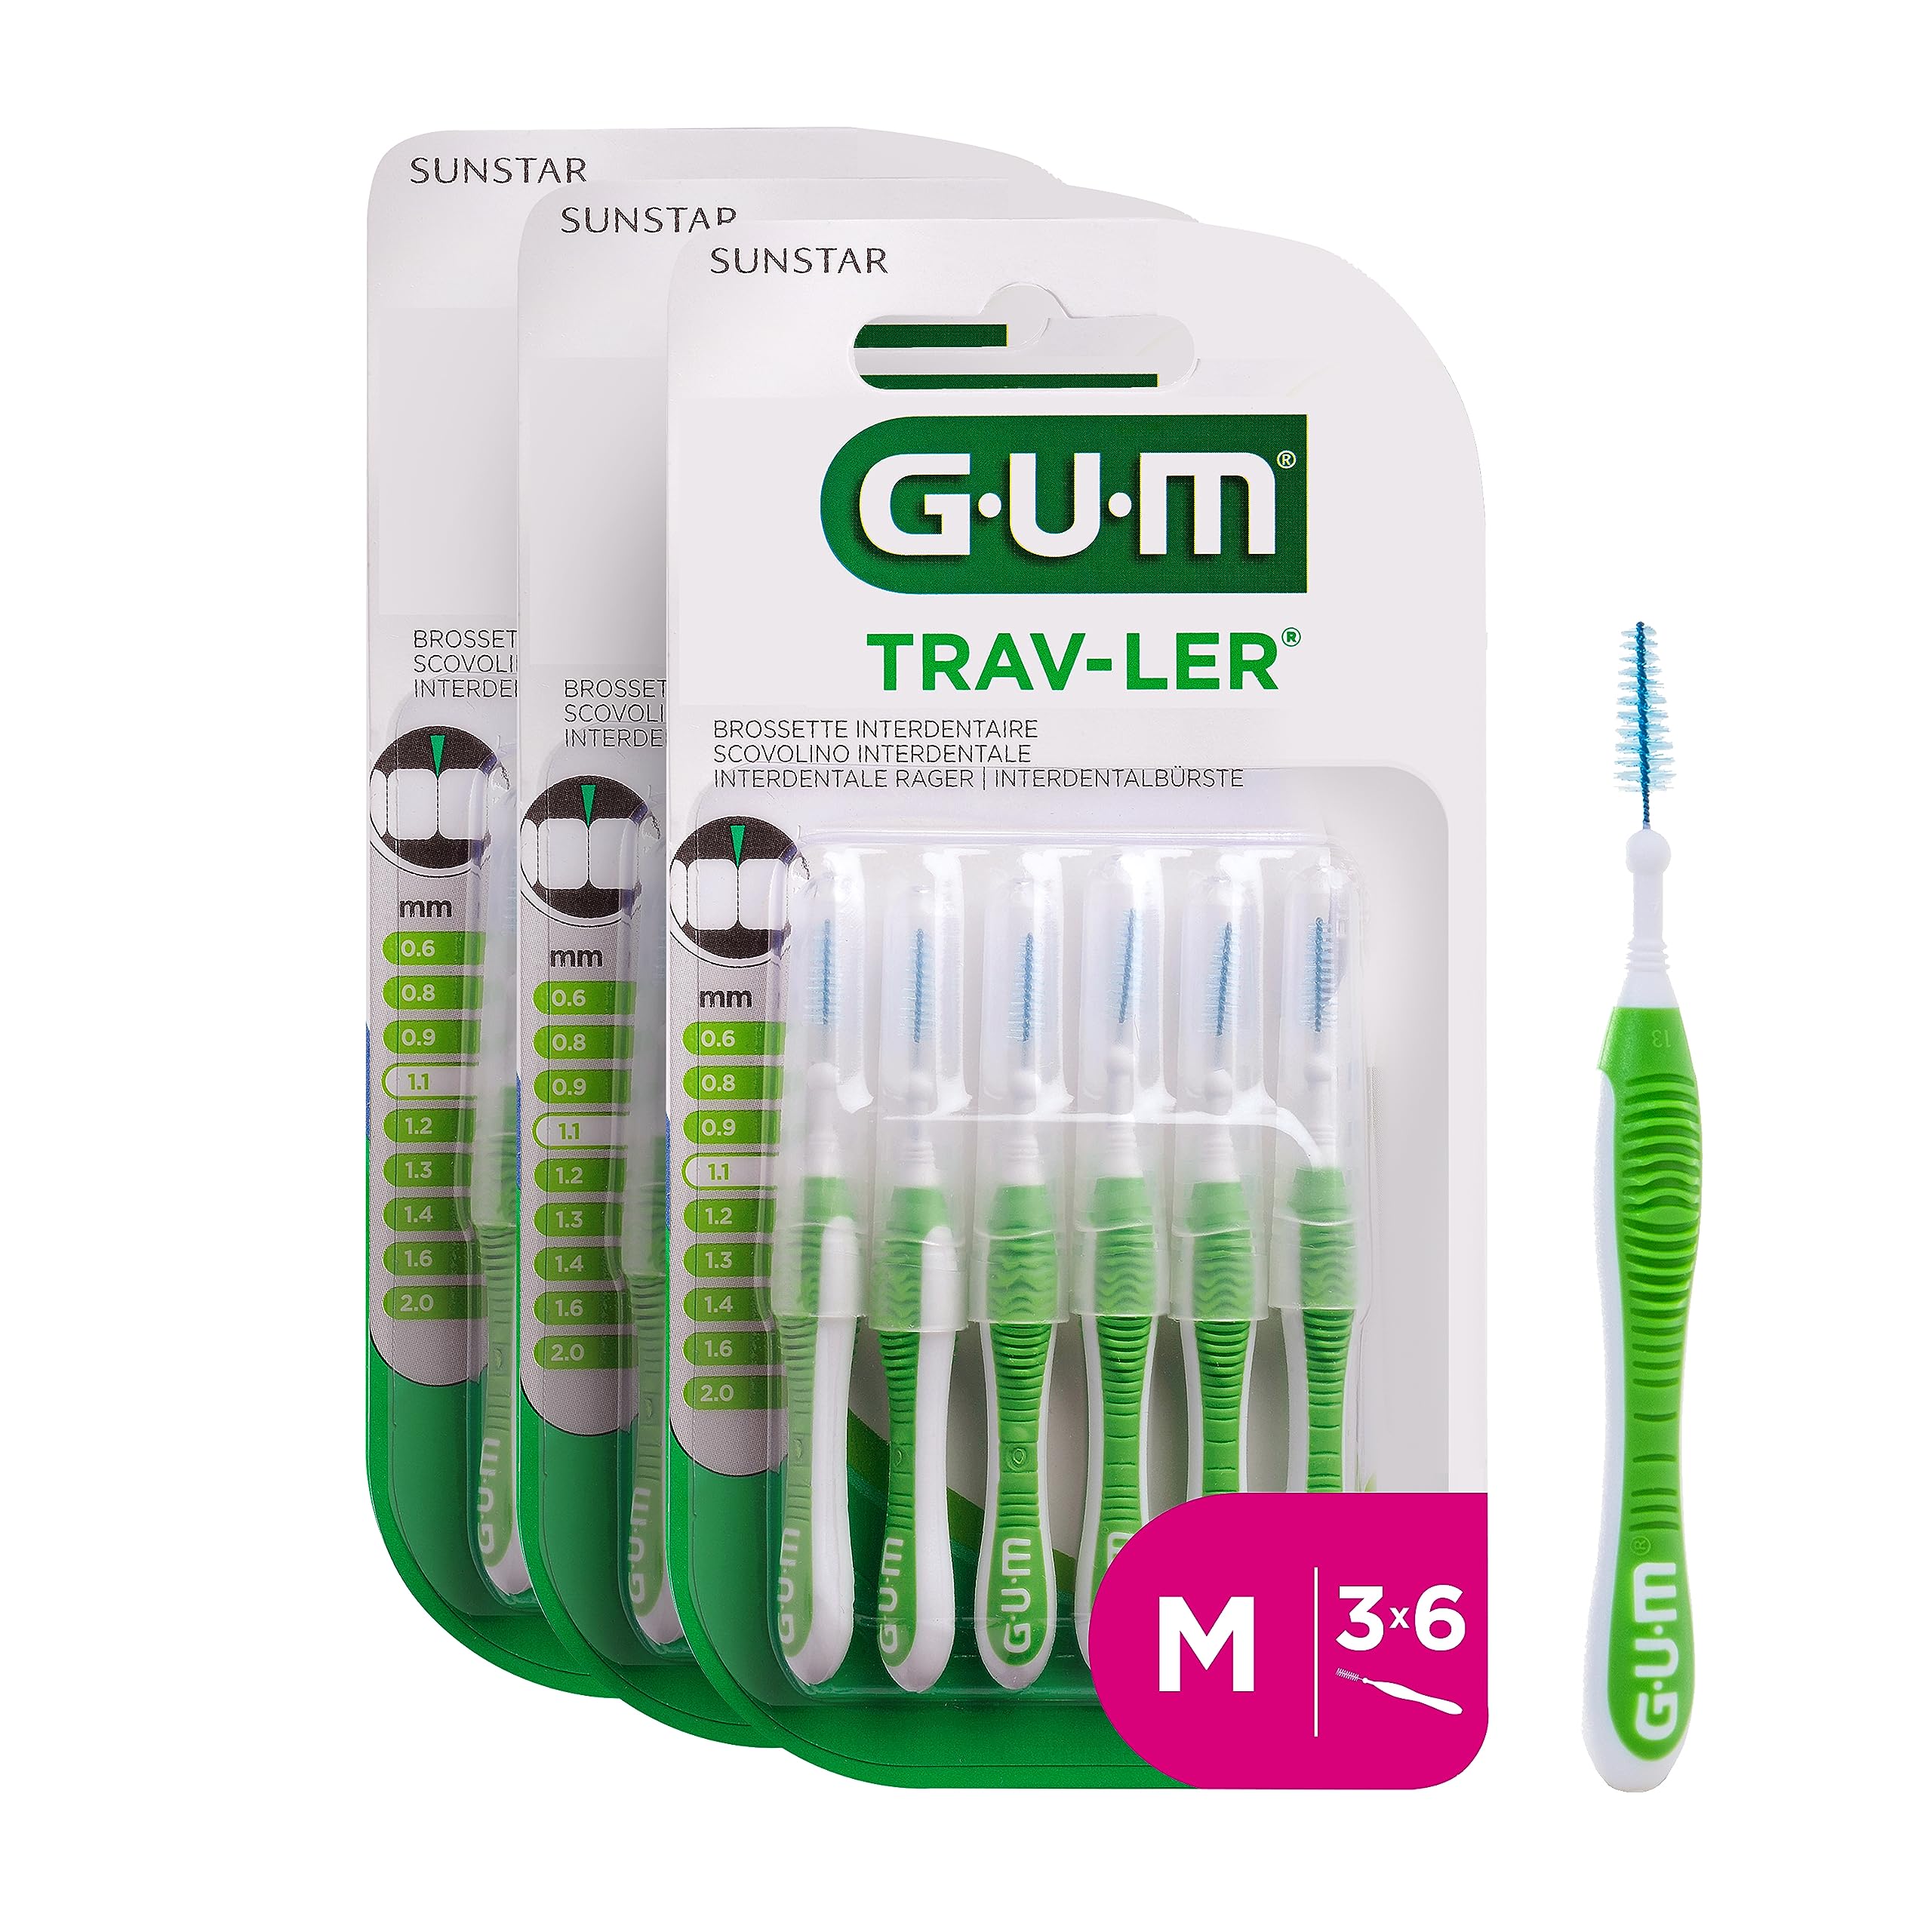 GUM TRAV-LER Interdentalbürsten/Für eine gründliche Reinigung aller Zahnzwischenräume (1.1mm)